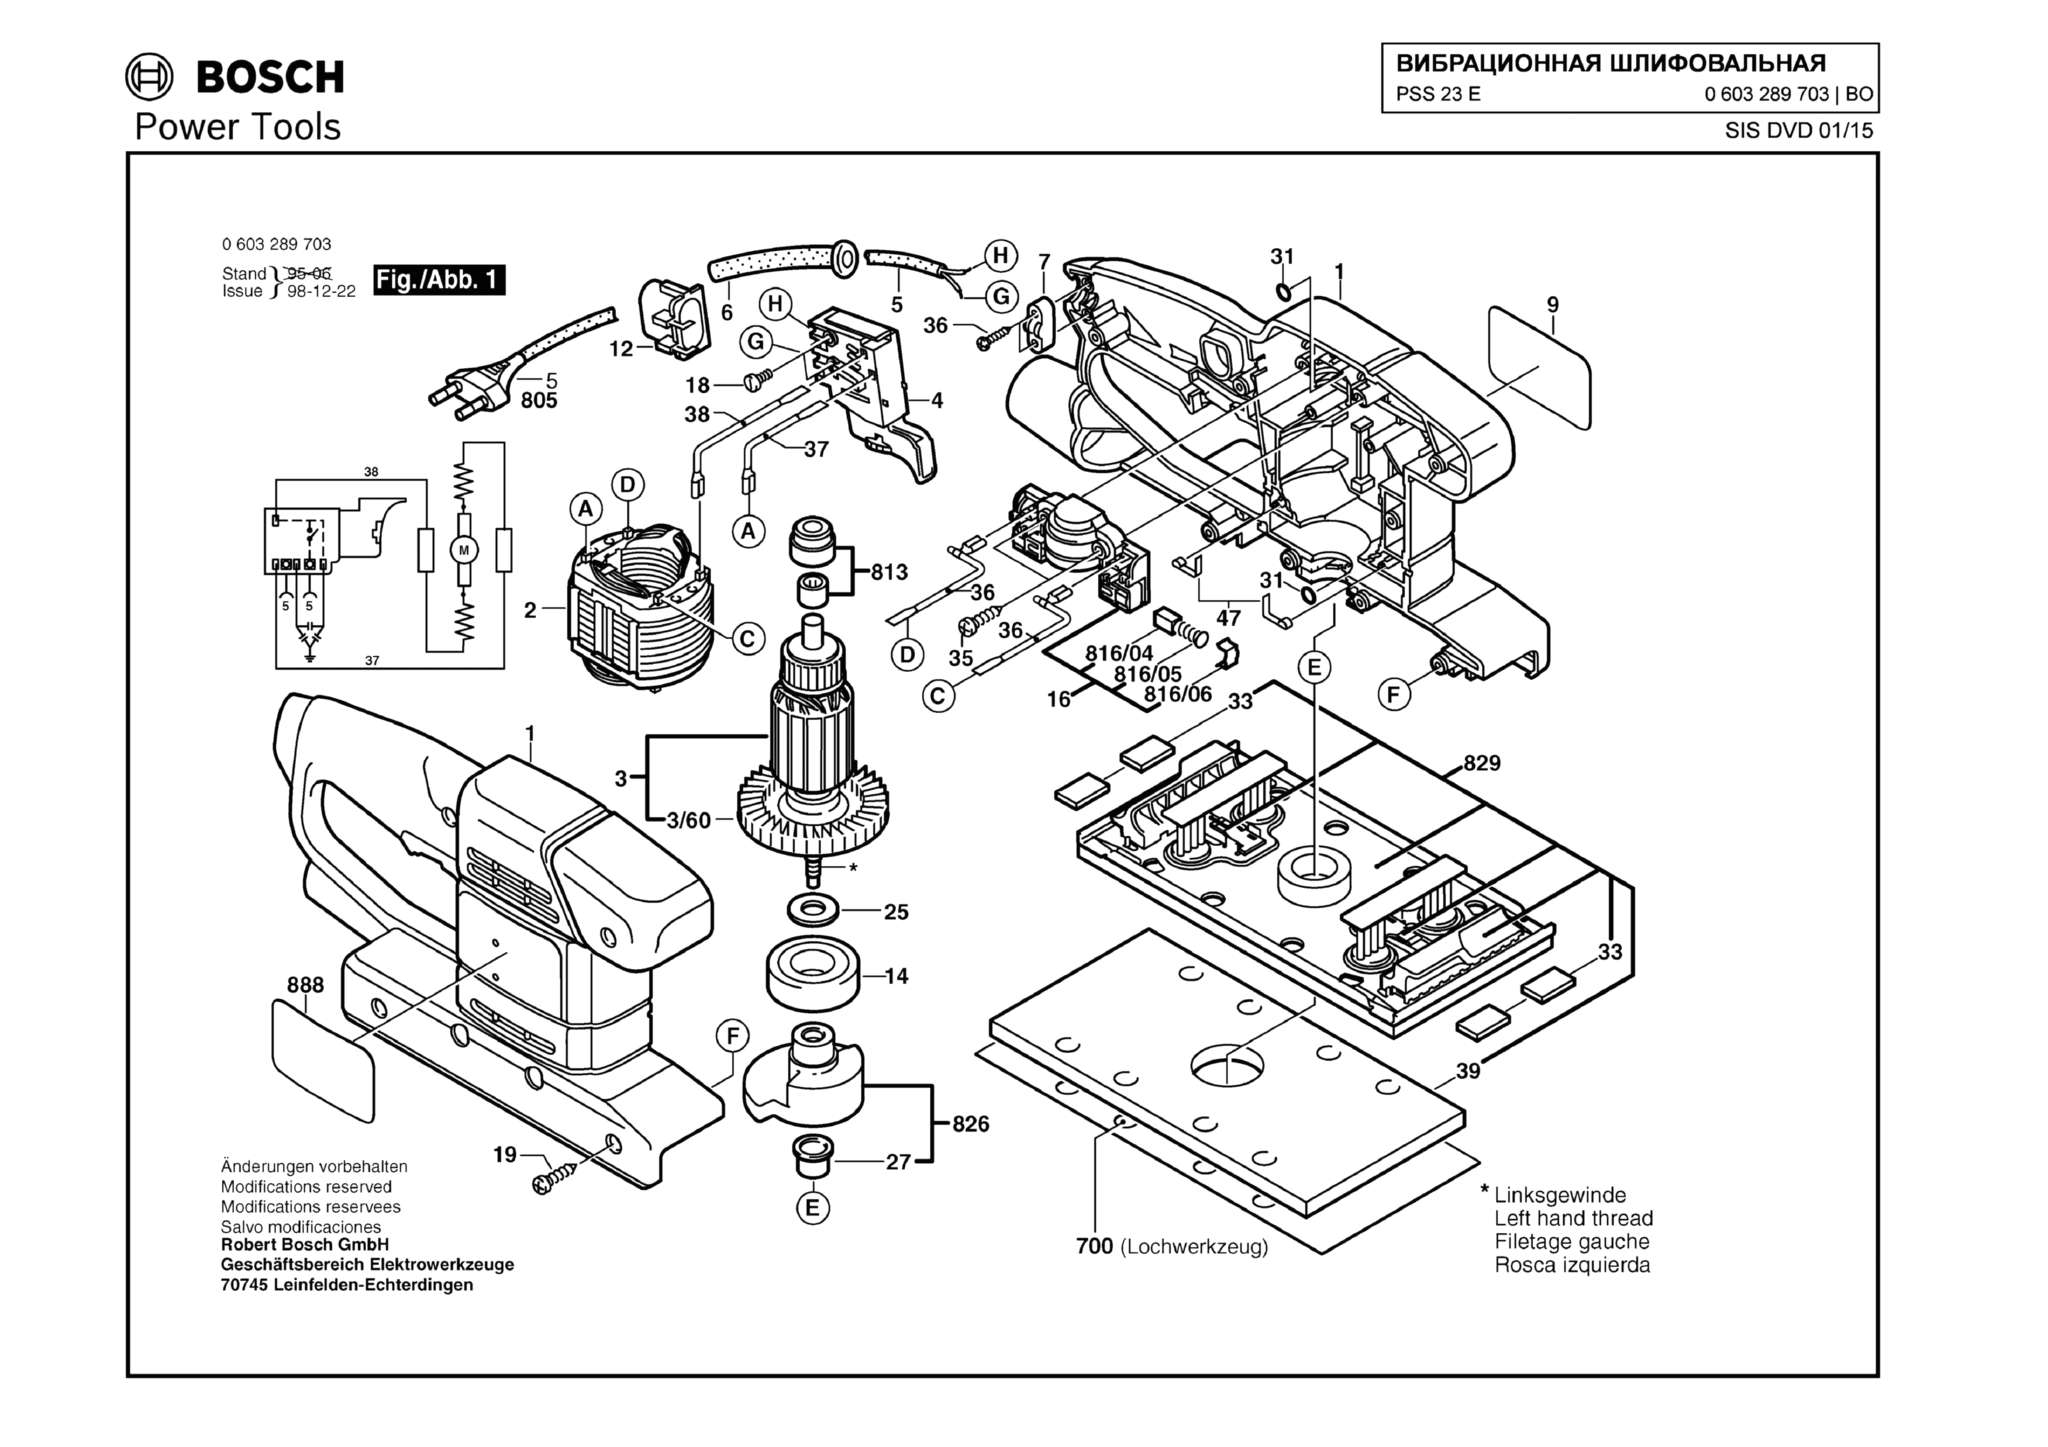 Запчасти, схема и деталировка Bosch PSS 23 E (ТИП 0603289703)